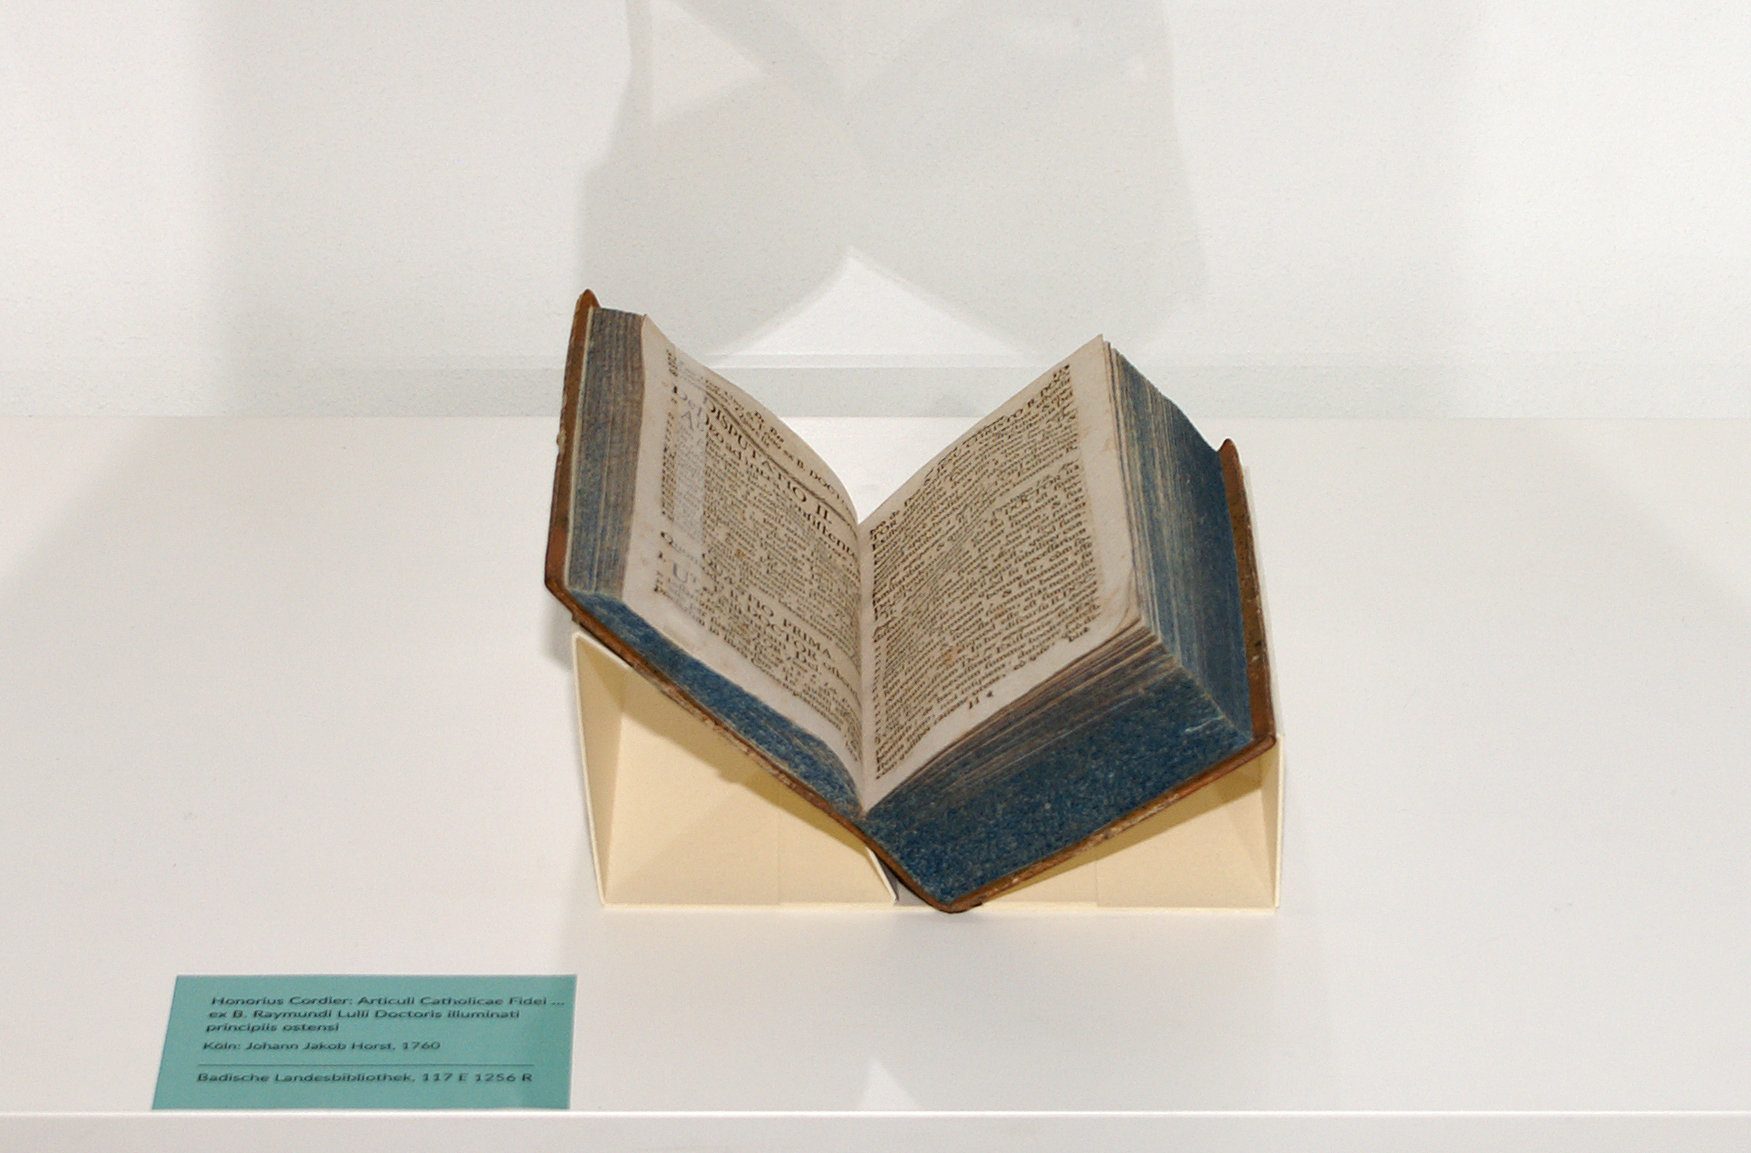 Ausgestellt von Ramon Llull, der Buchschnitt ist dunkelblau.